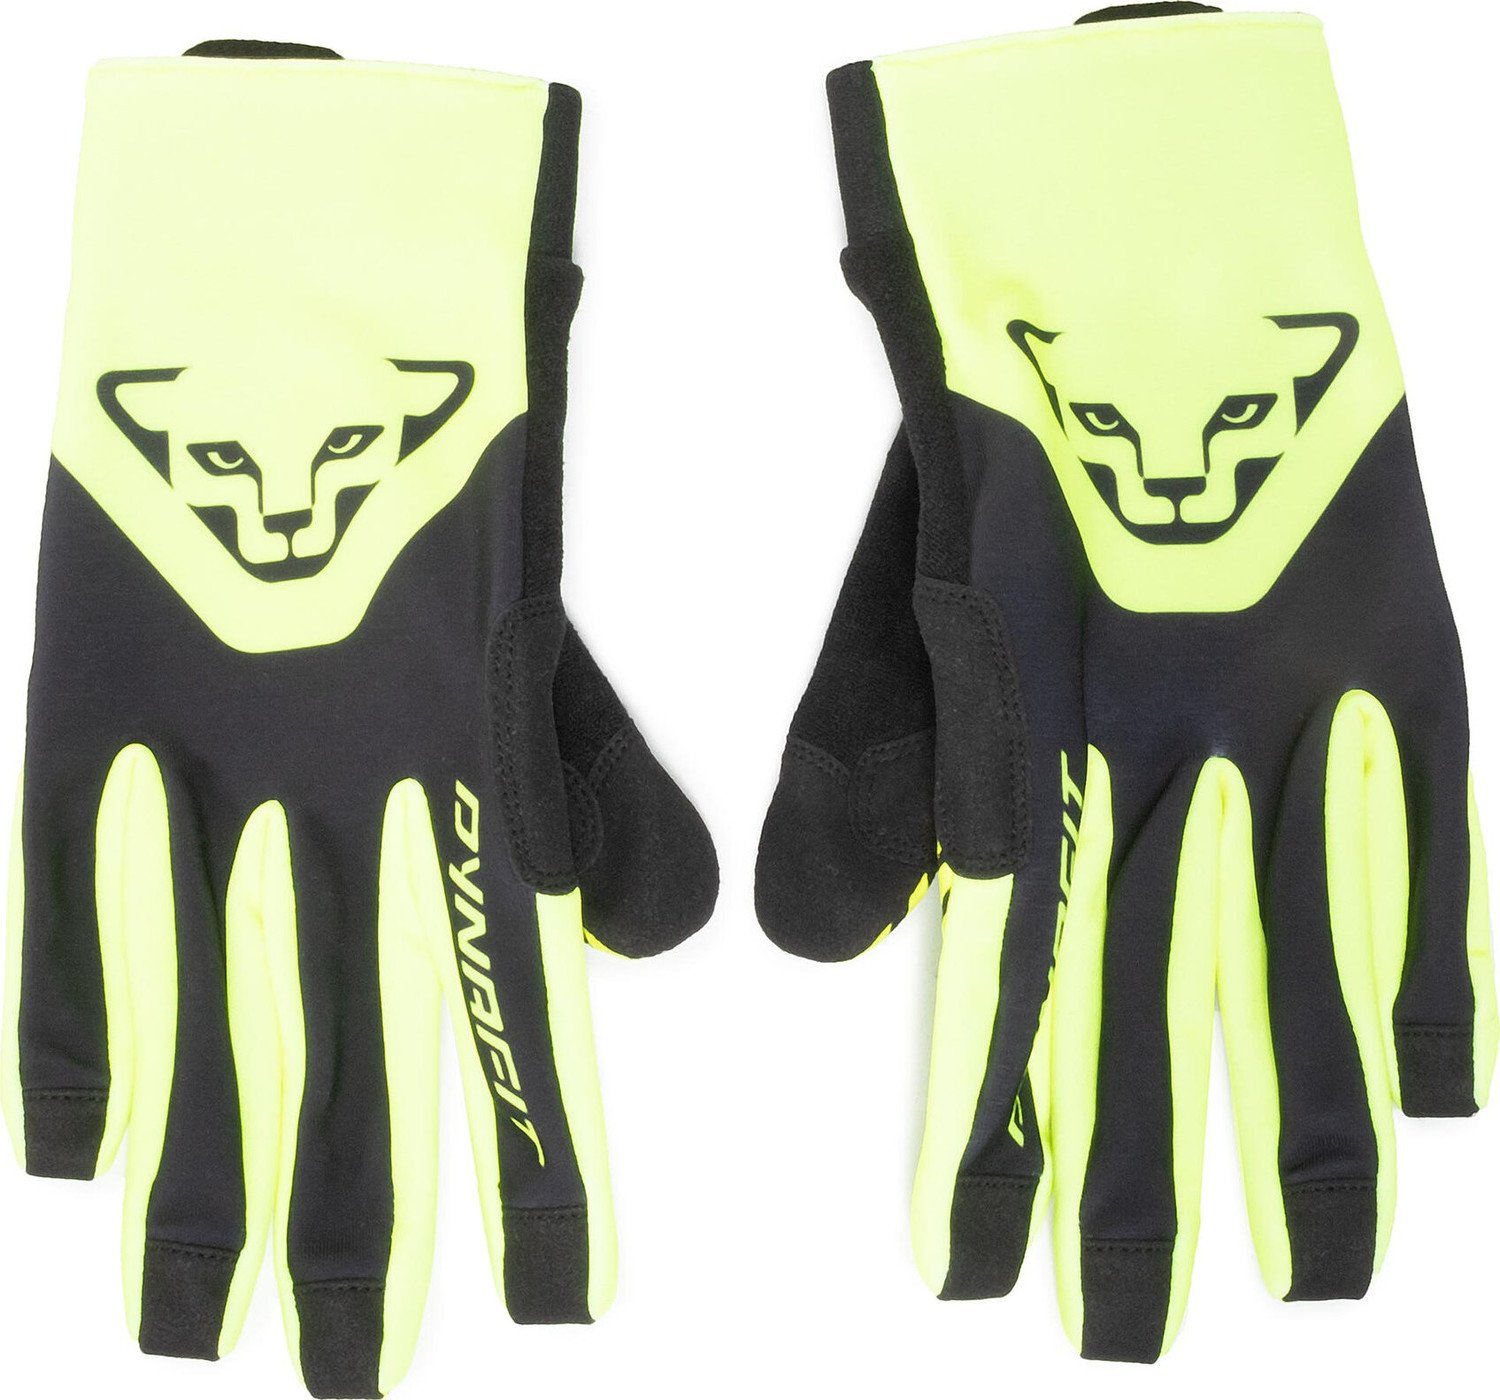 Pánské rukavice Dynafit Dna 2 Gloves 08-70949 Neon Yellow 0910